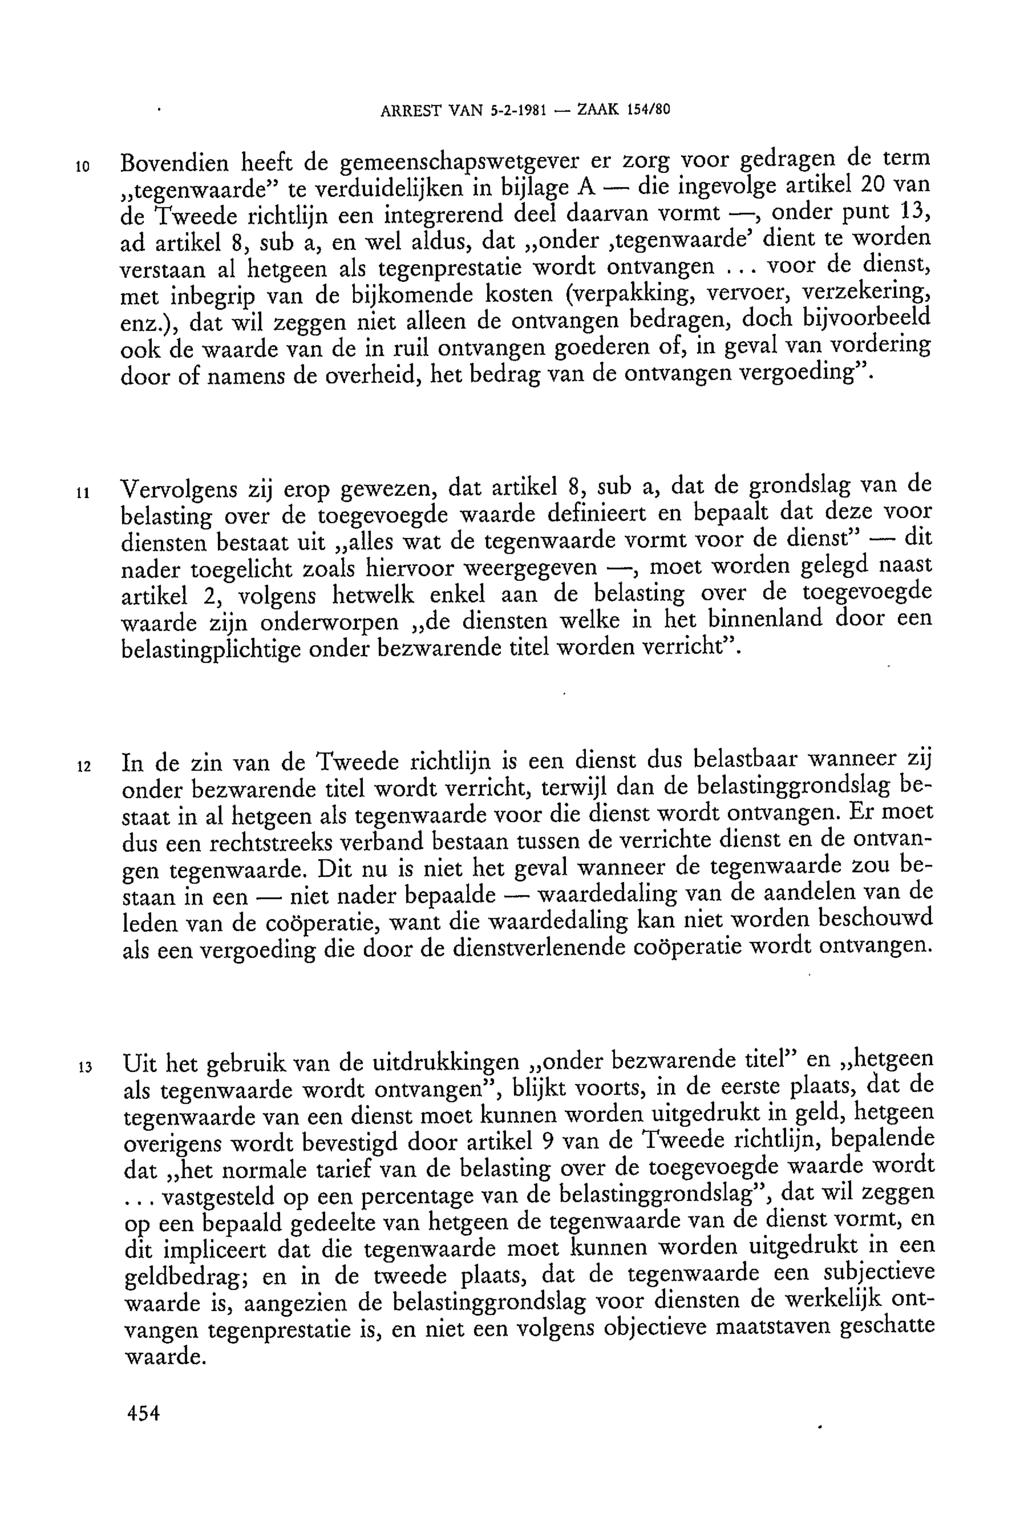 ARREST VAN 5-2-1981 ZAAK 154/80 10 Bovendien heeft de gemeenschapswetgever er zorg voor gedragen de term tegenwaarde" te verduidelijken in bijlage A die ingevolge artikel 20 van de Tweede richtlijn